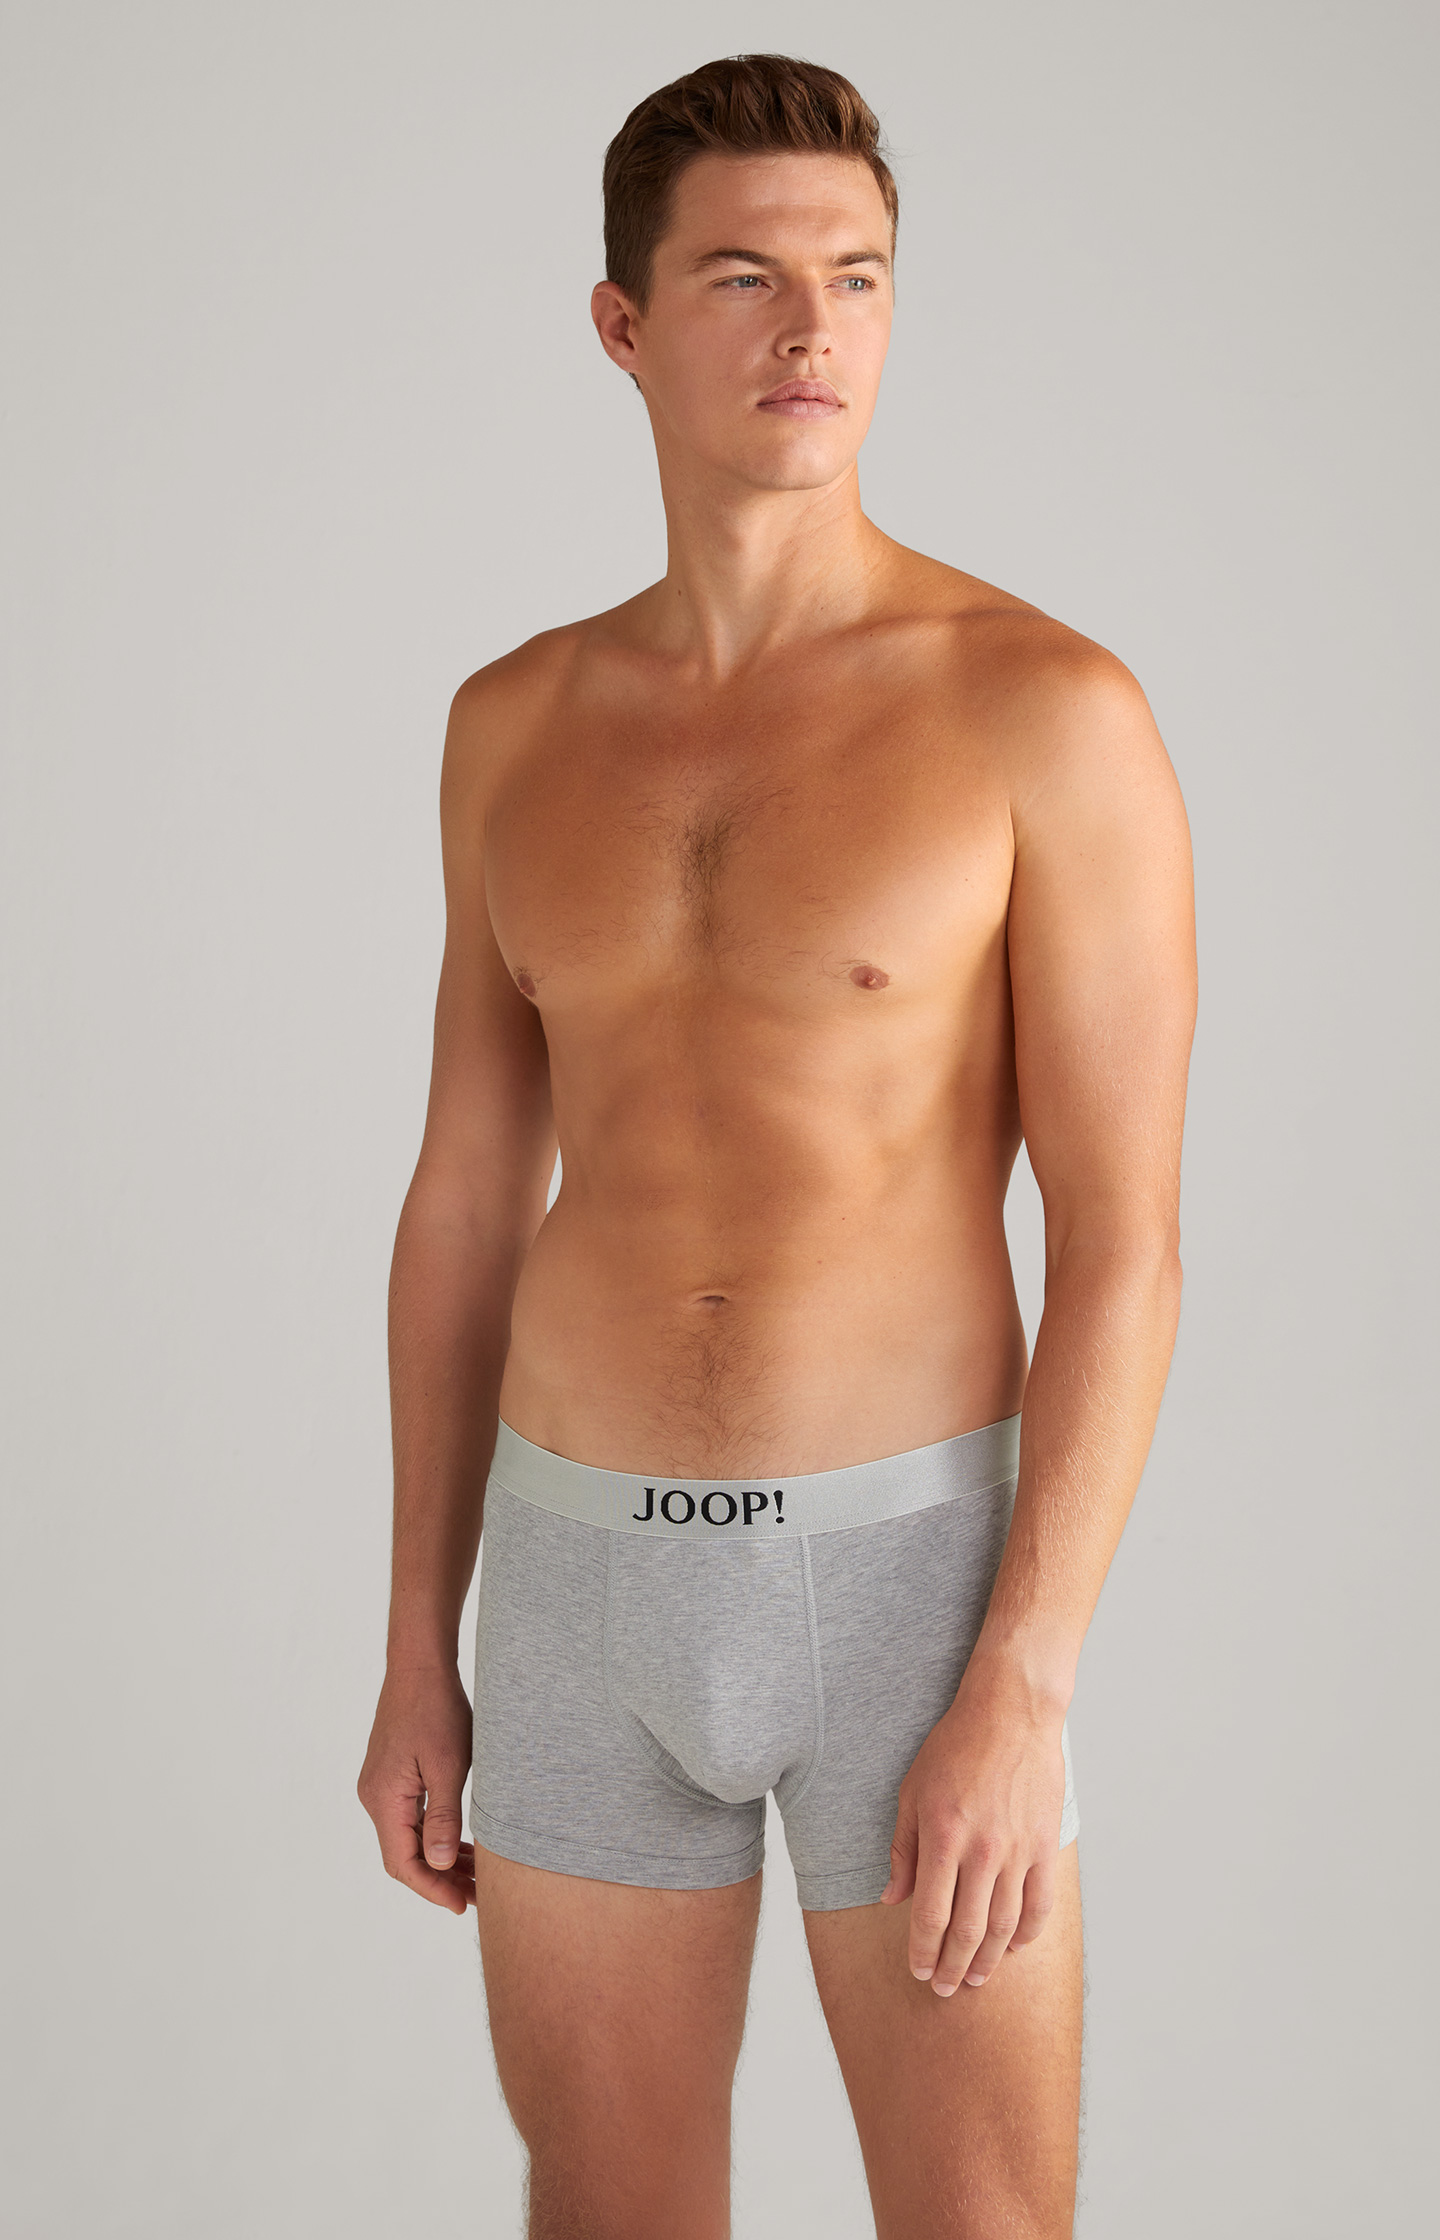 TOOT Jock Strap  Men's Underwear brand TOOT official website